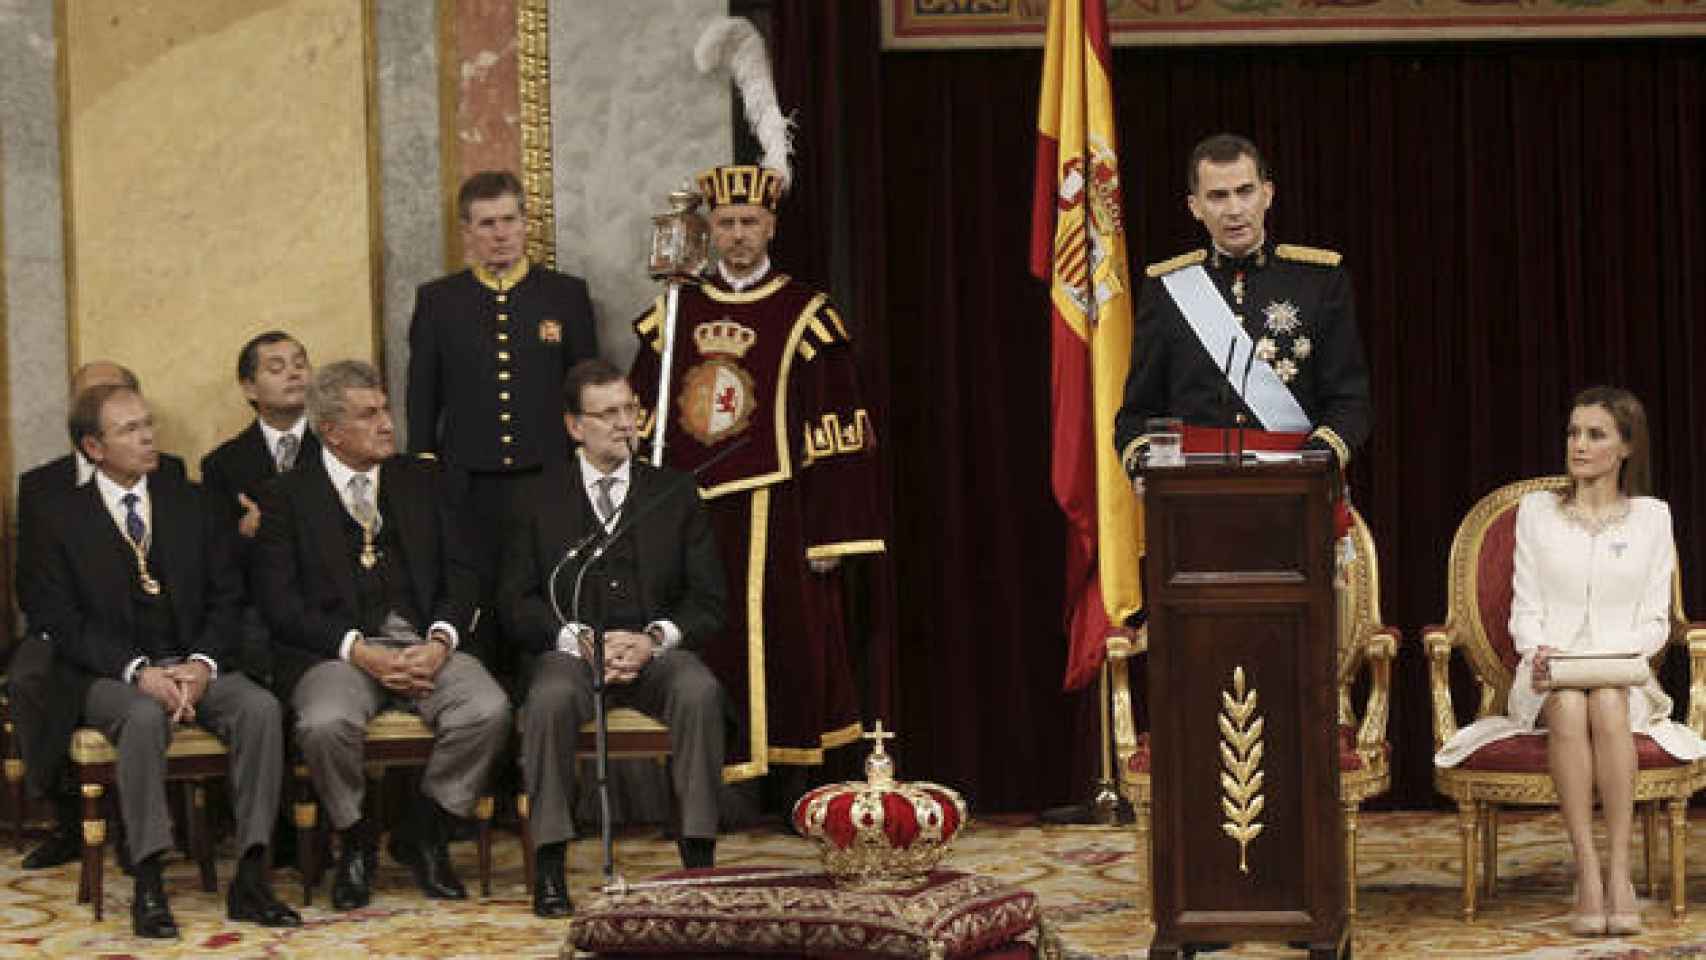 elipe VI su discurso de proclamación como rey, ante la reina Letizia y las autoridades del Estado